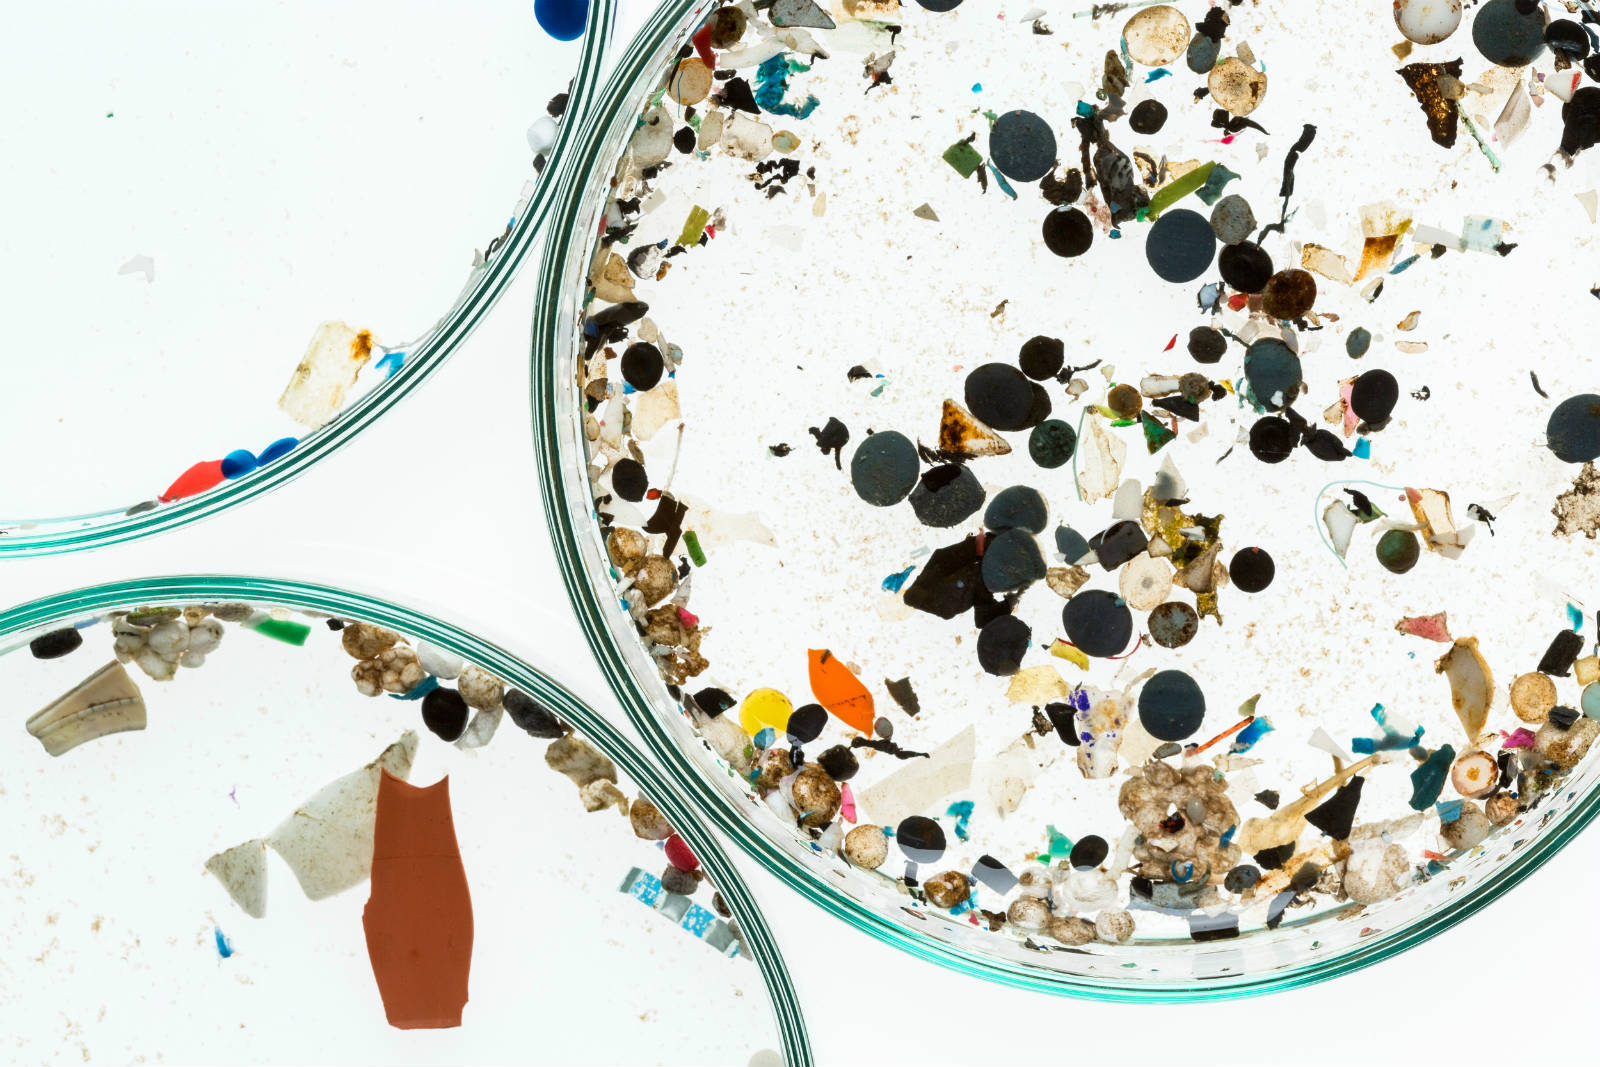 有研究在全球超過 170 種海洋生物體內發現微塑膠，當中包括香港人常食用的烏頭、蠔和丁香魚等。